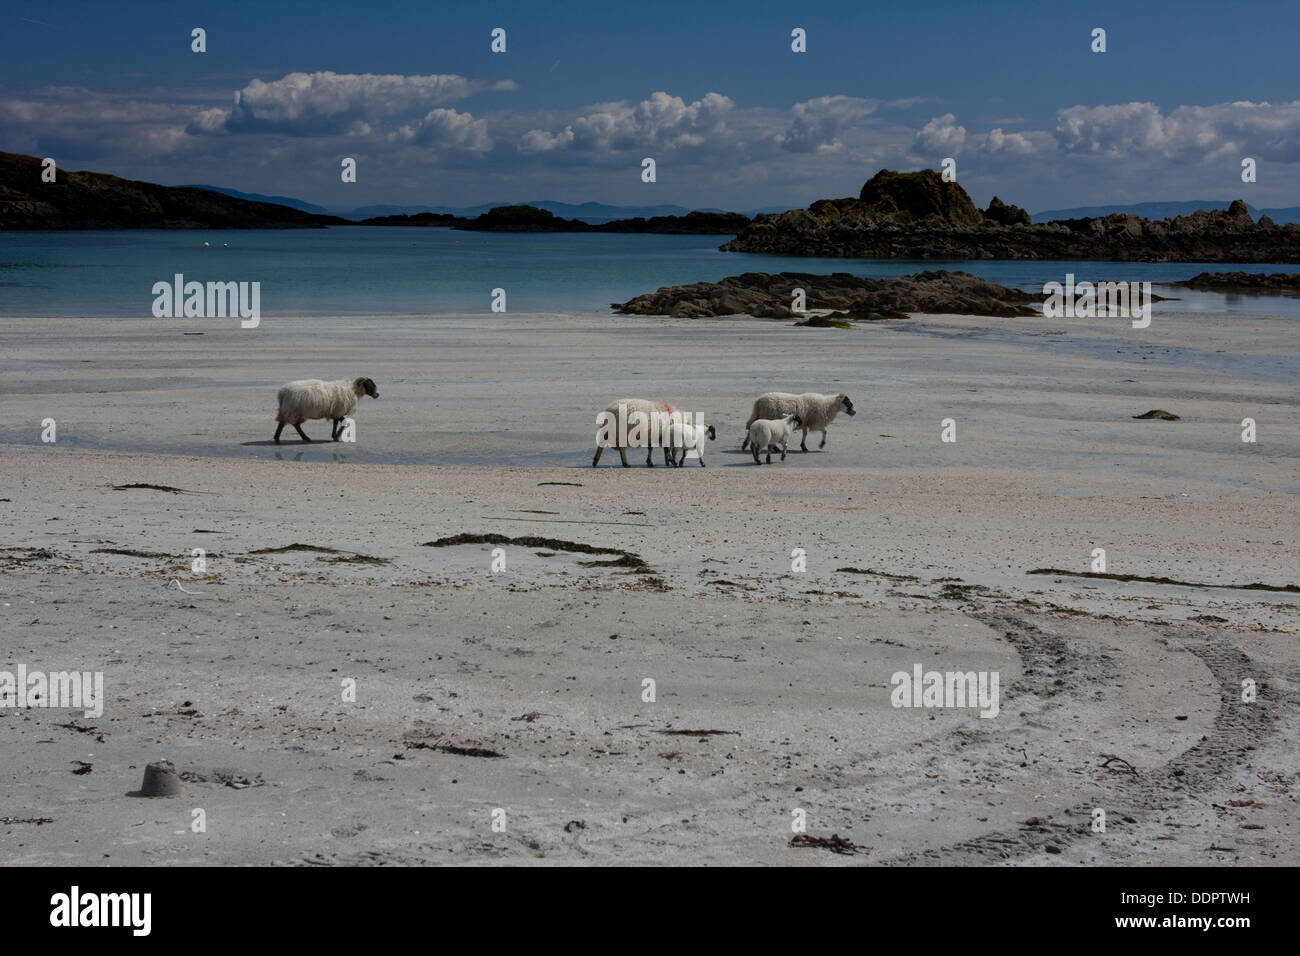 Arolainish Bay, Isle of Mull, Scotland, sheep crossing beach Stock Photo